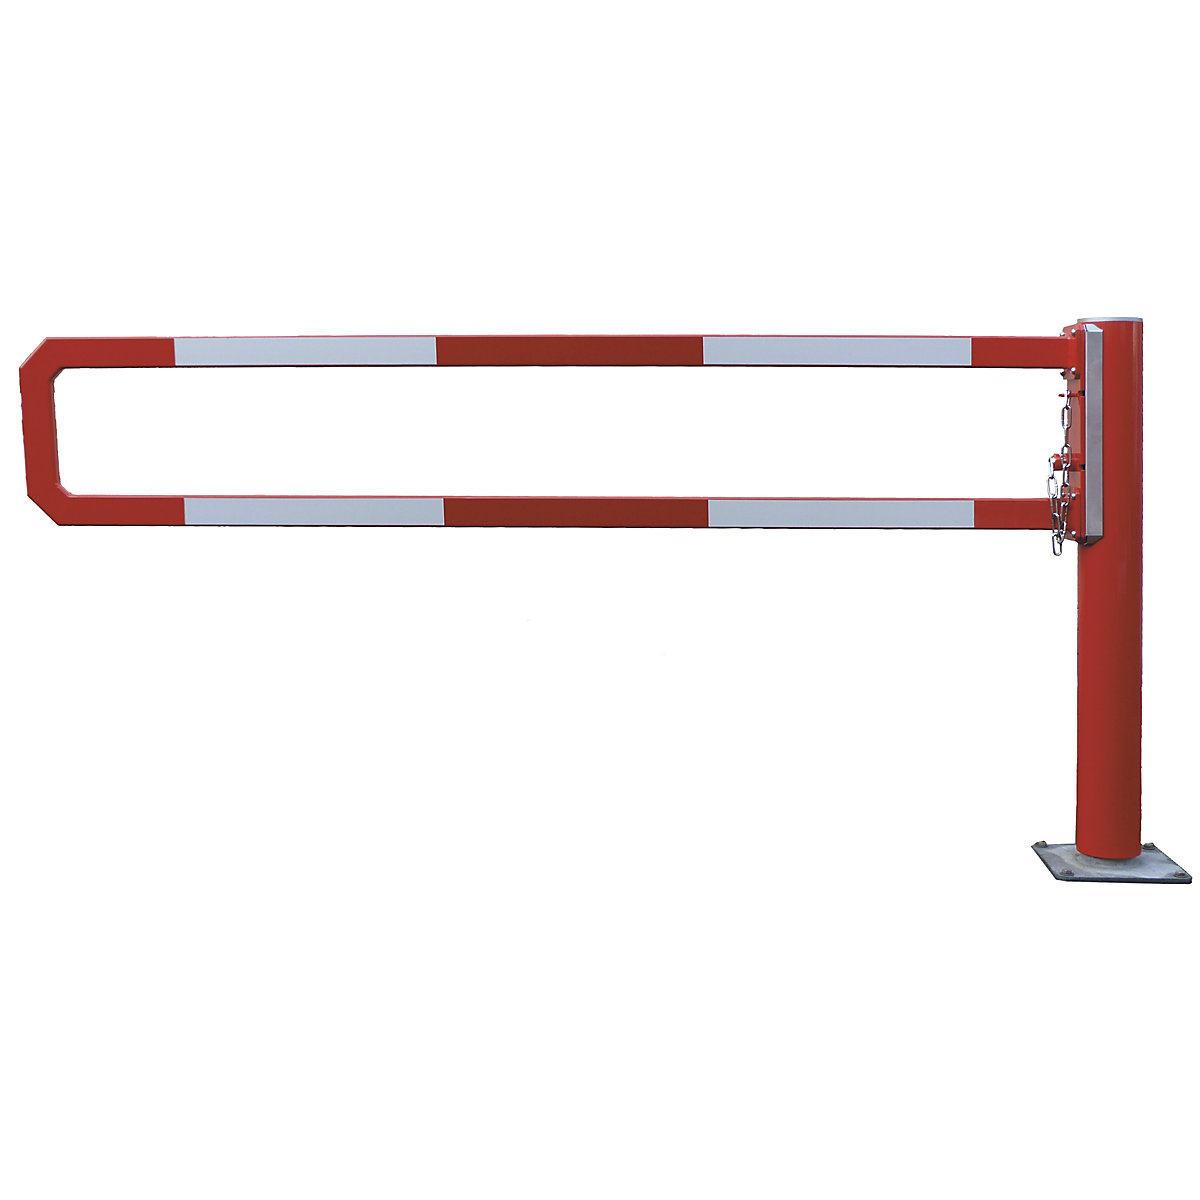 Okretna cestovna rampa – Mannus, svijetla širina 1,5 m, vruće pocinčano, dodatno praškasto lakirano u crvenoj boji-2